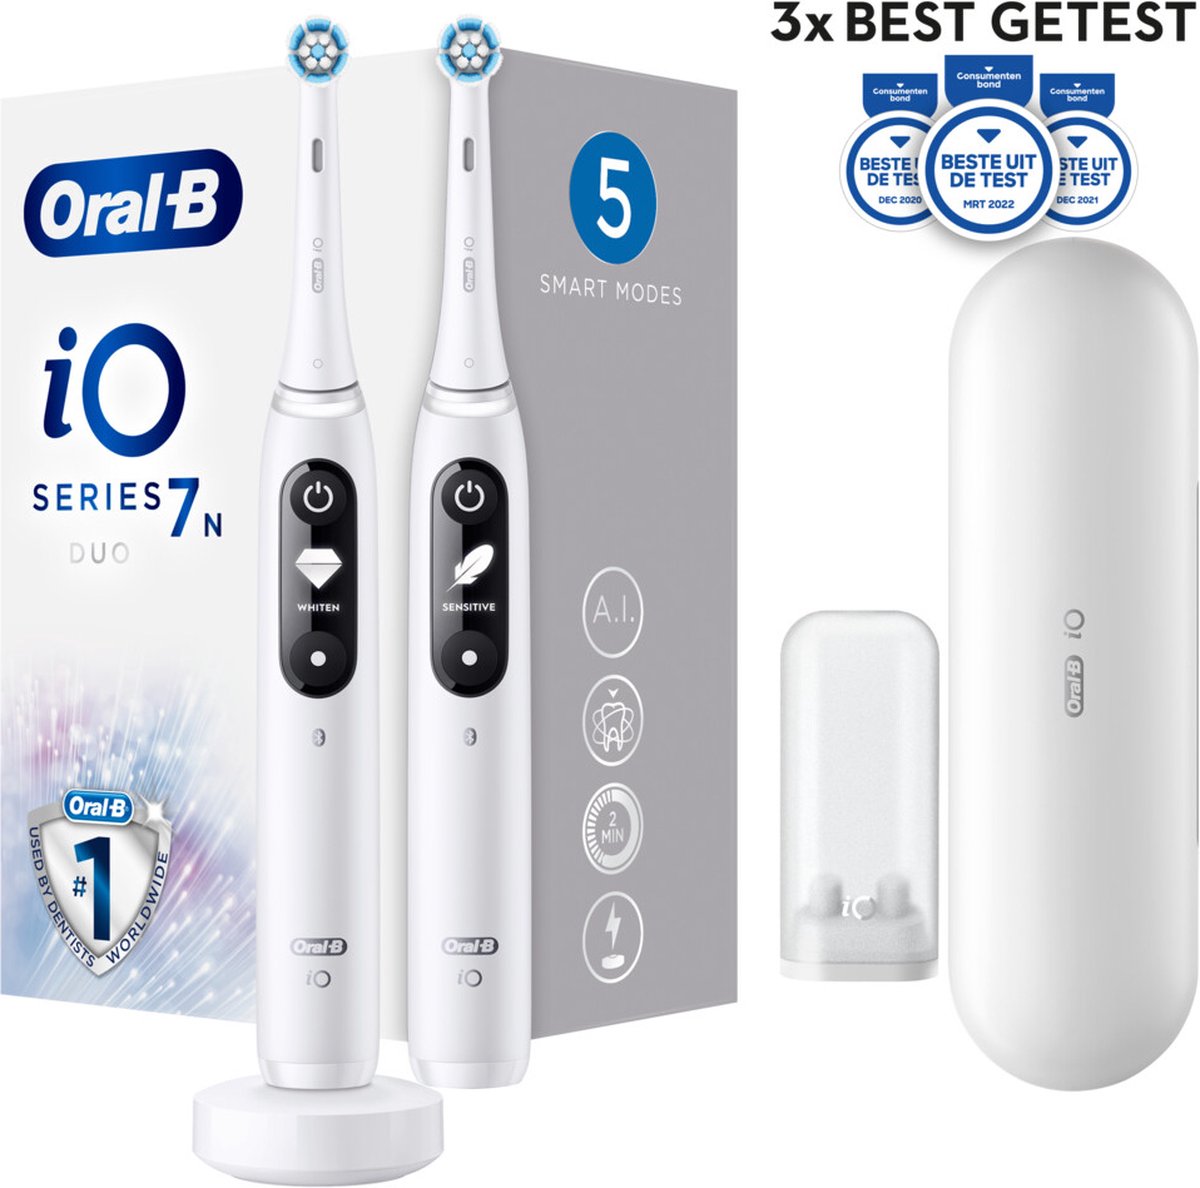 Evalueerbaar Voor u meester Oral-B iO 7n - Elektrische Tandenborstels Duoverpakking - Wit | bol.com